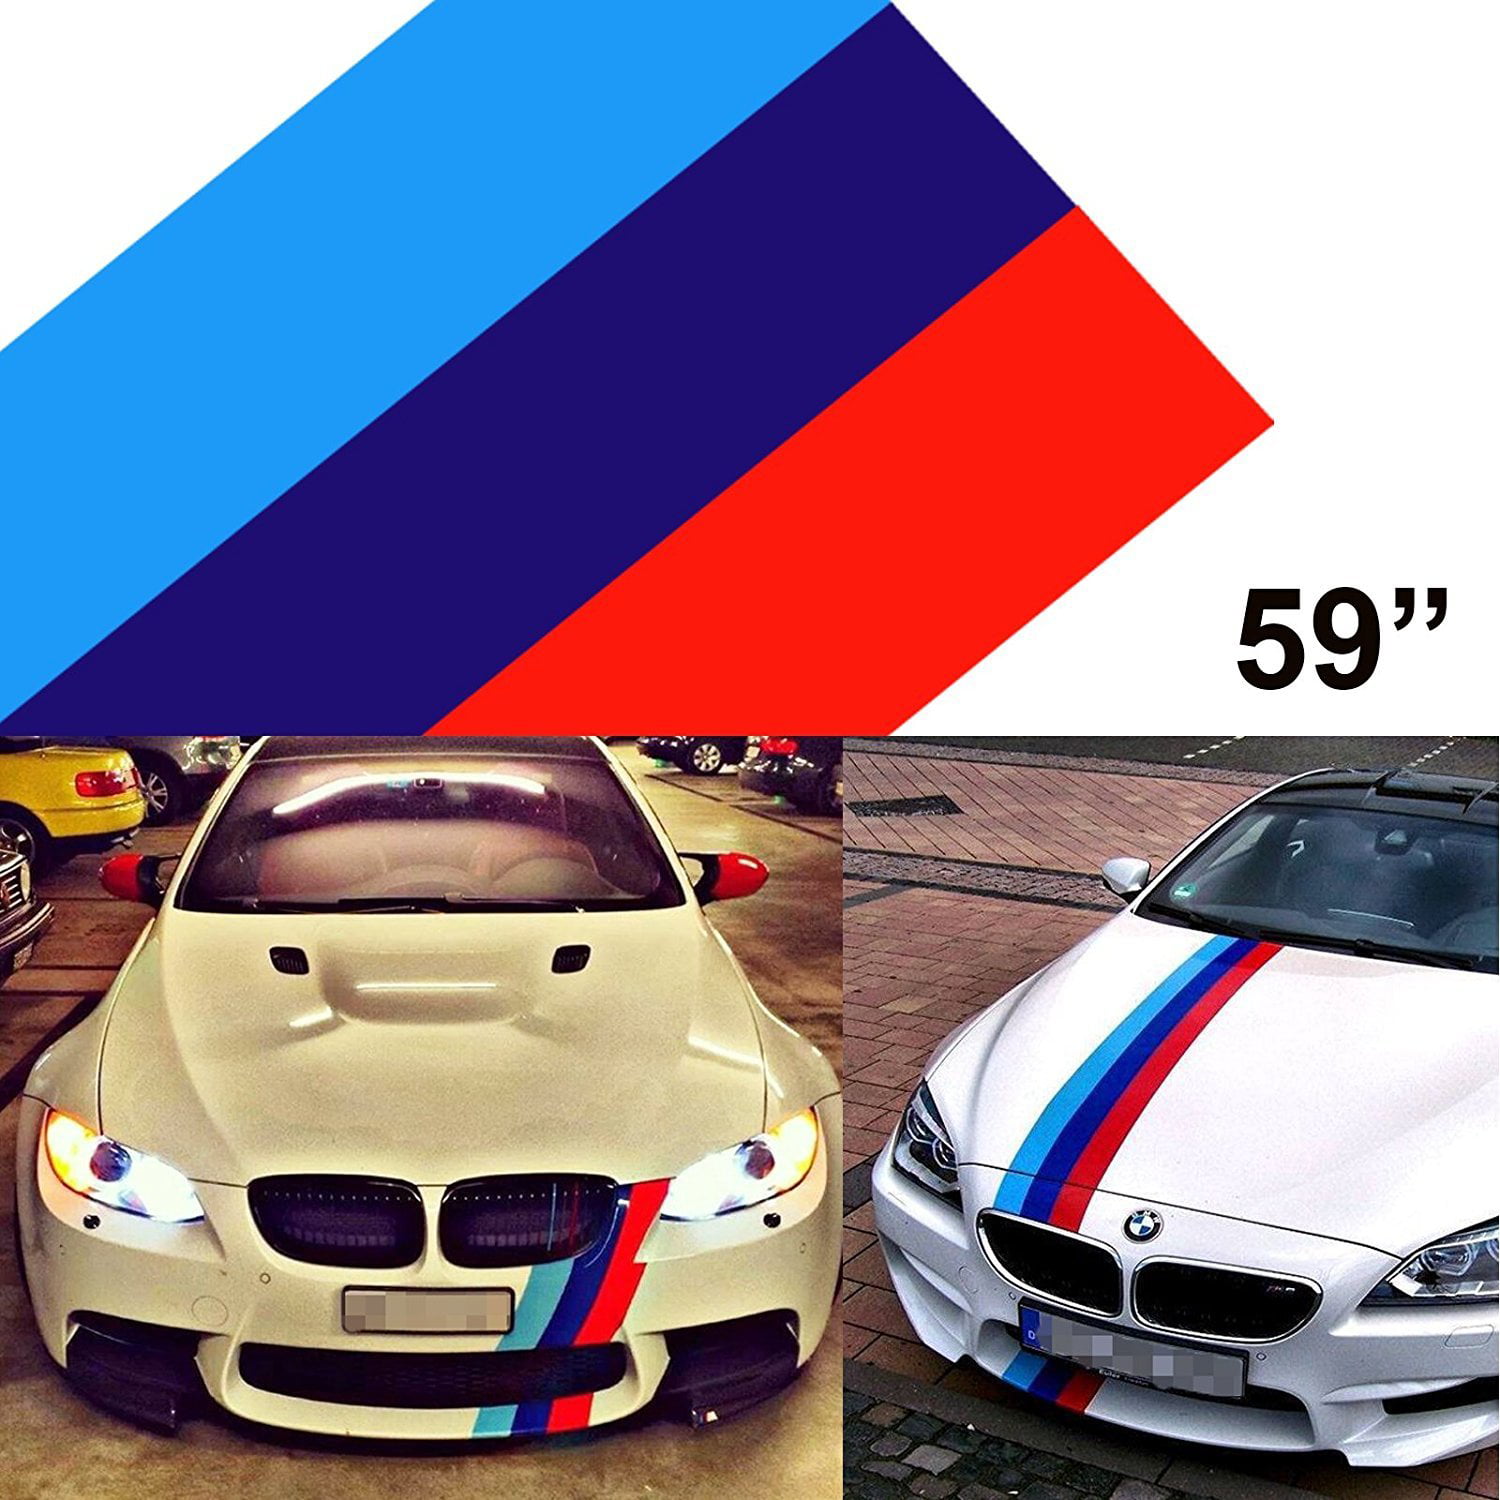 Replica BMW Decorative Sticker Kit, Shop Today. Get it Tomorrow!